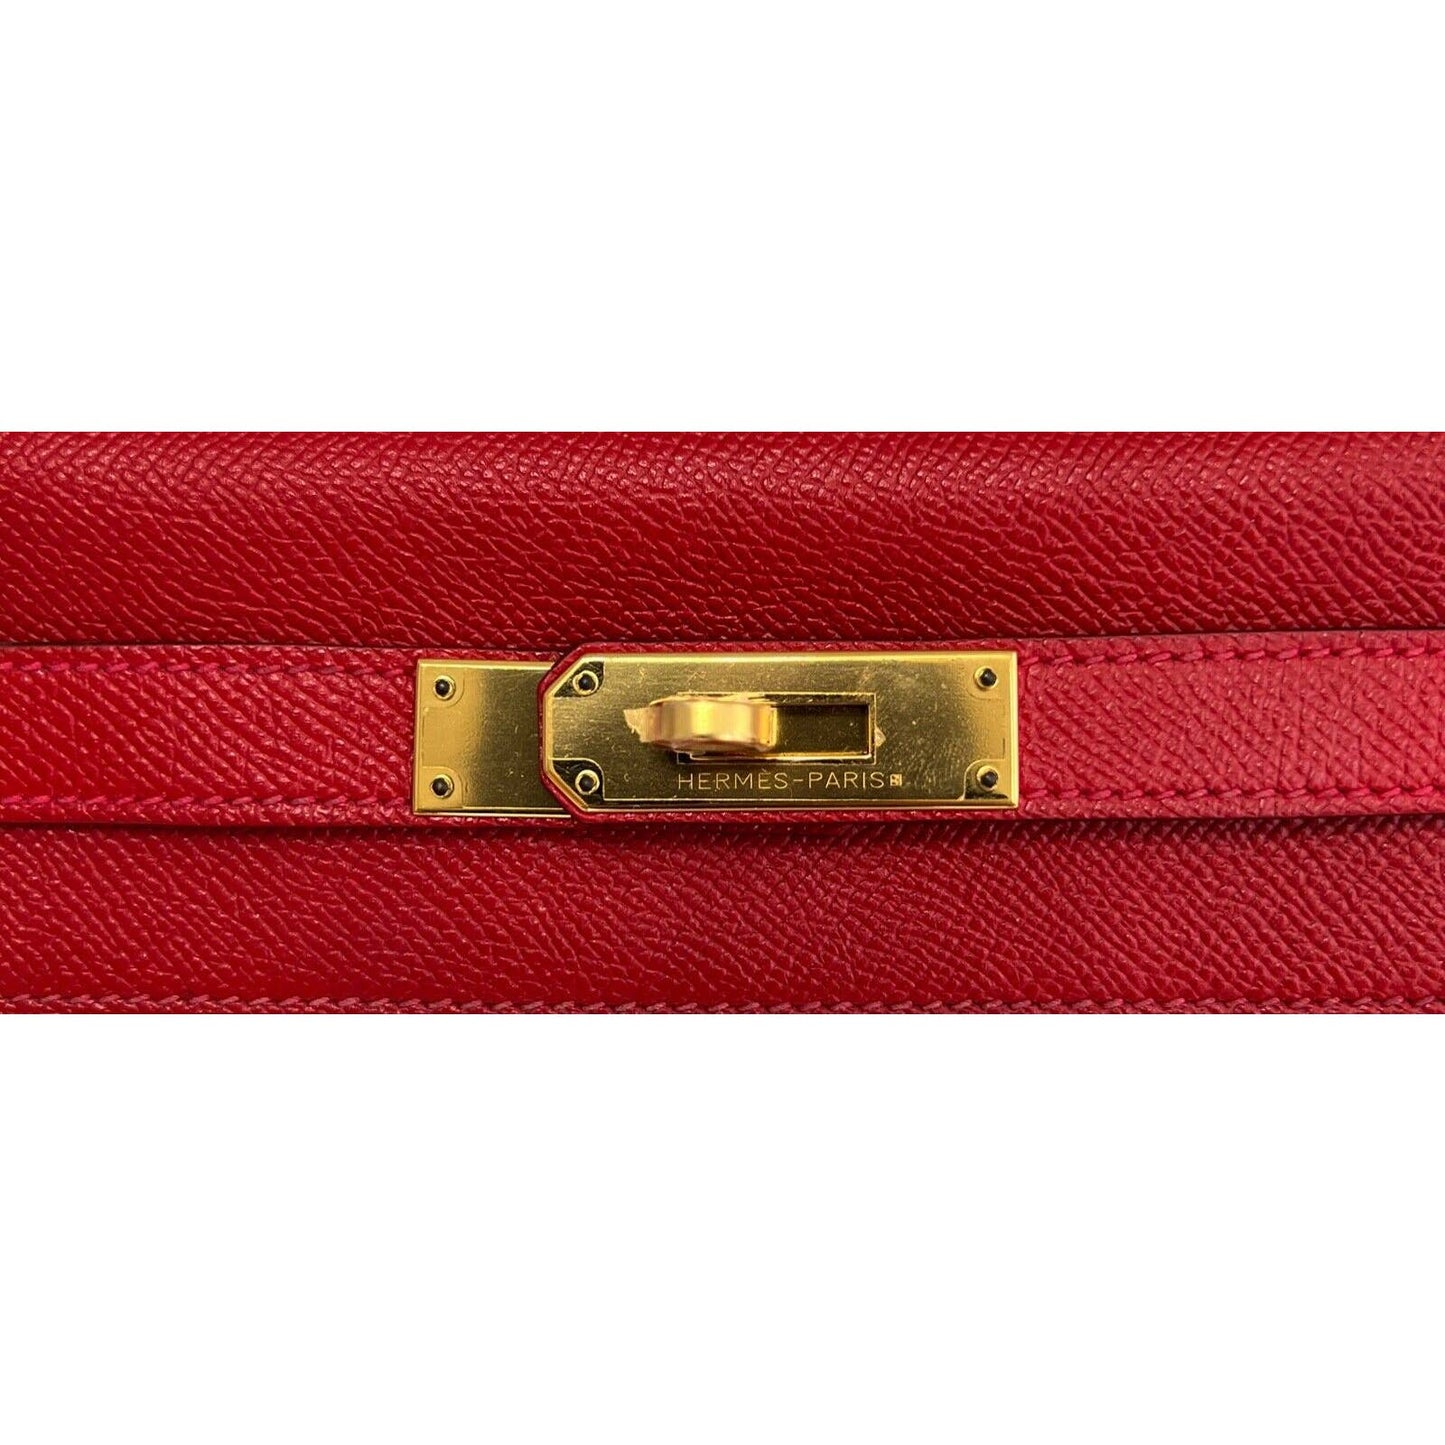 Hermes Kelly 28 Sellier Rouge Casaque Red Epsom Gold Hardware Shoulder Bag